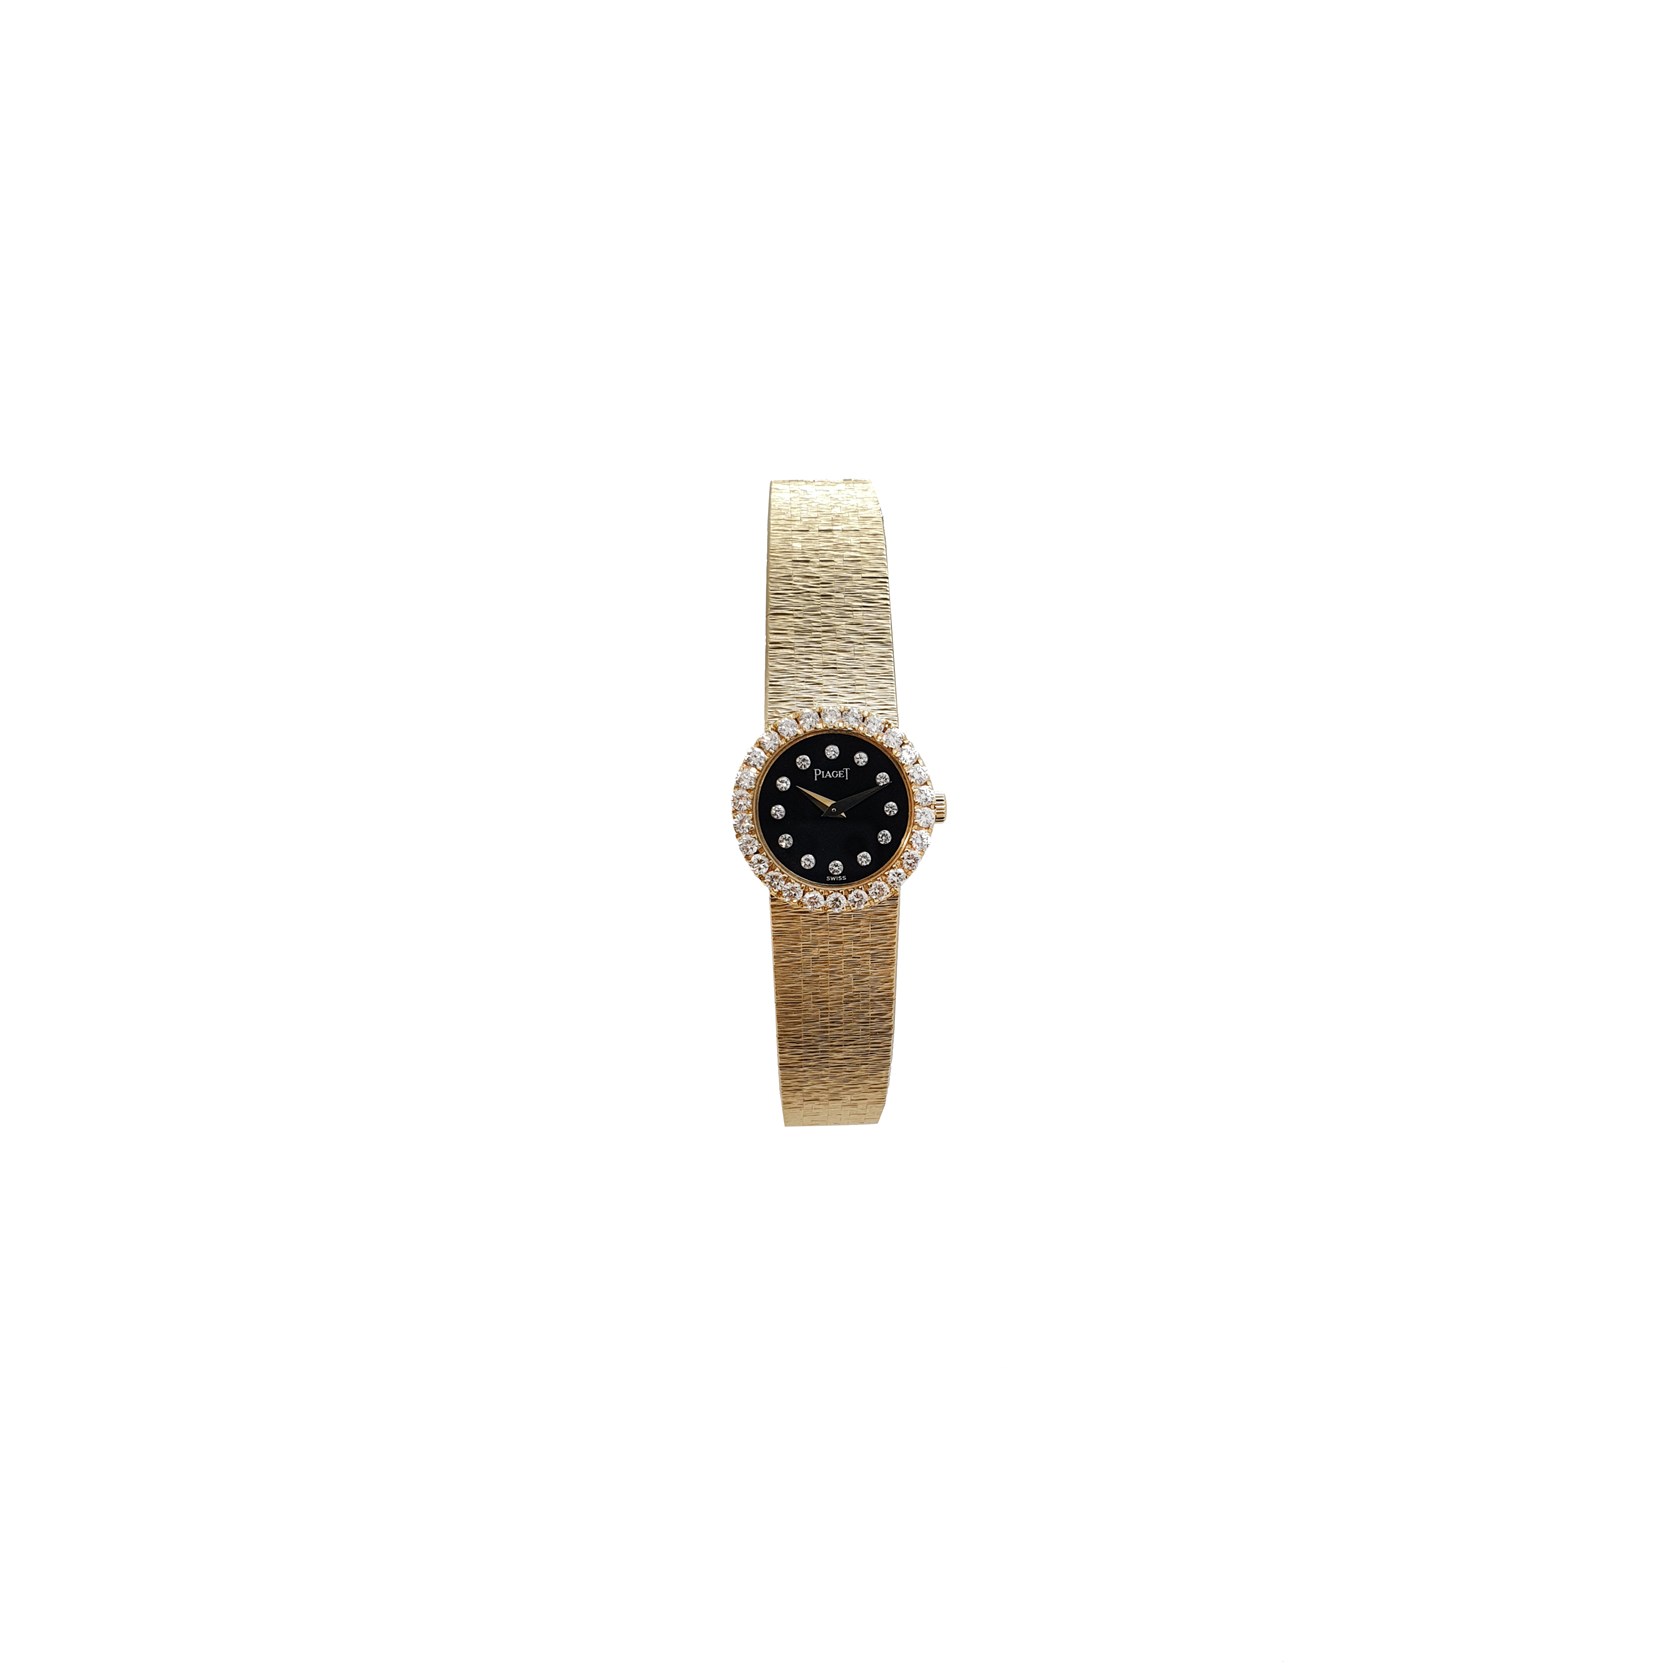 Piaget Ladies Vintage Watch - Black Dial